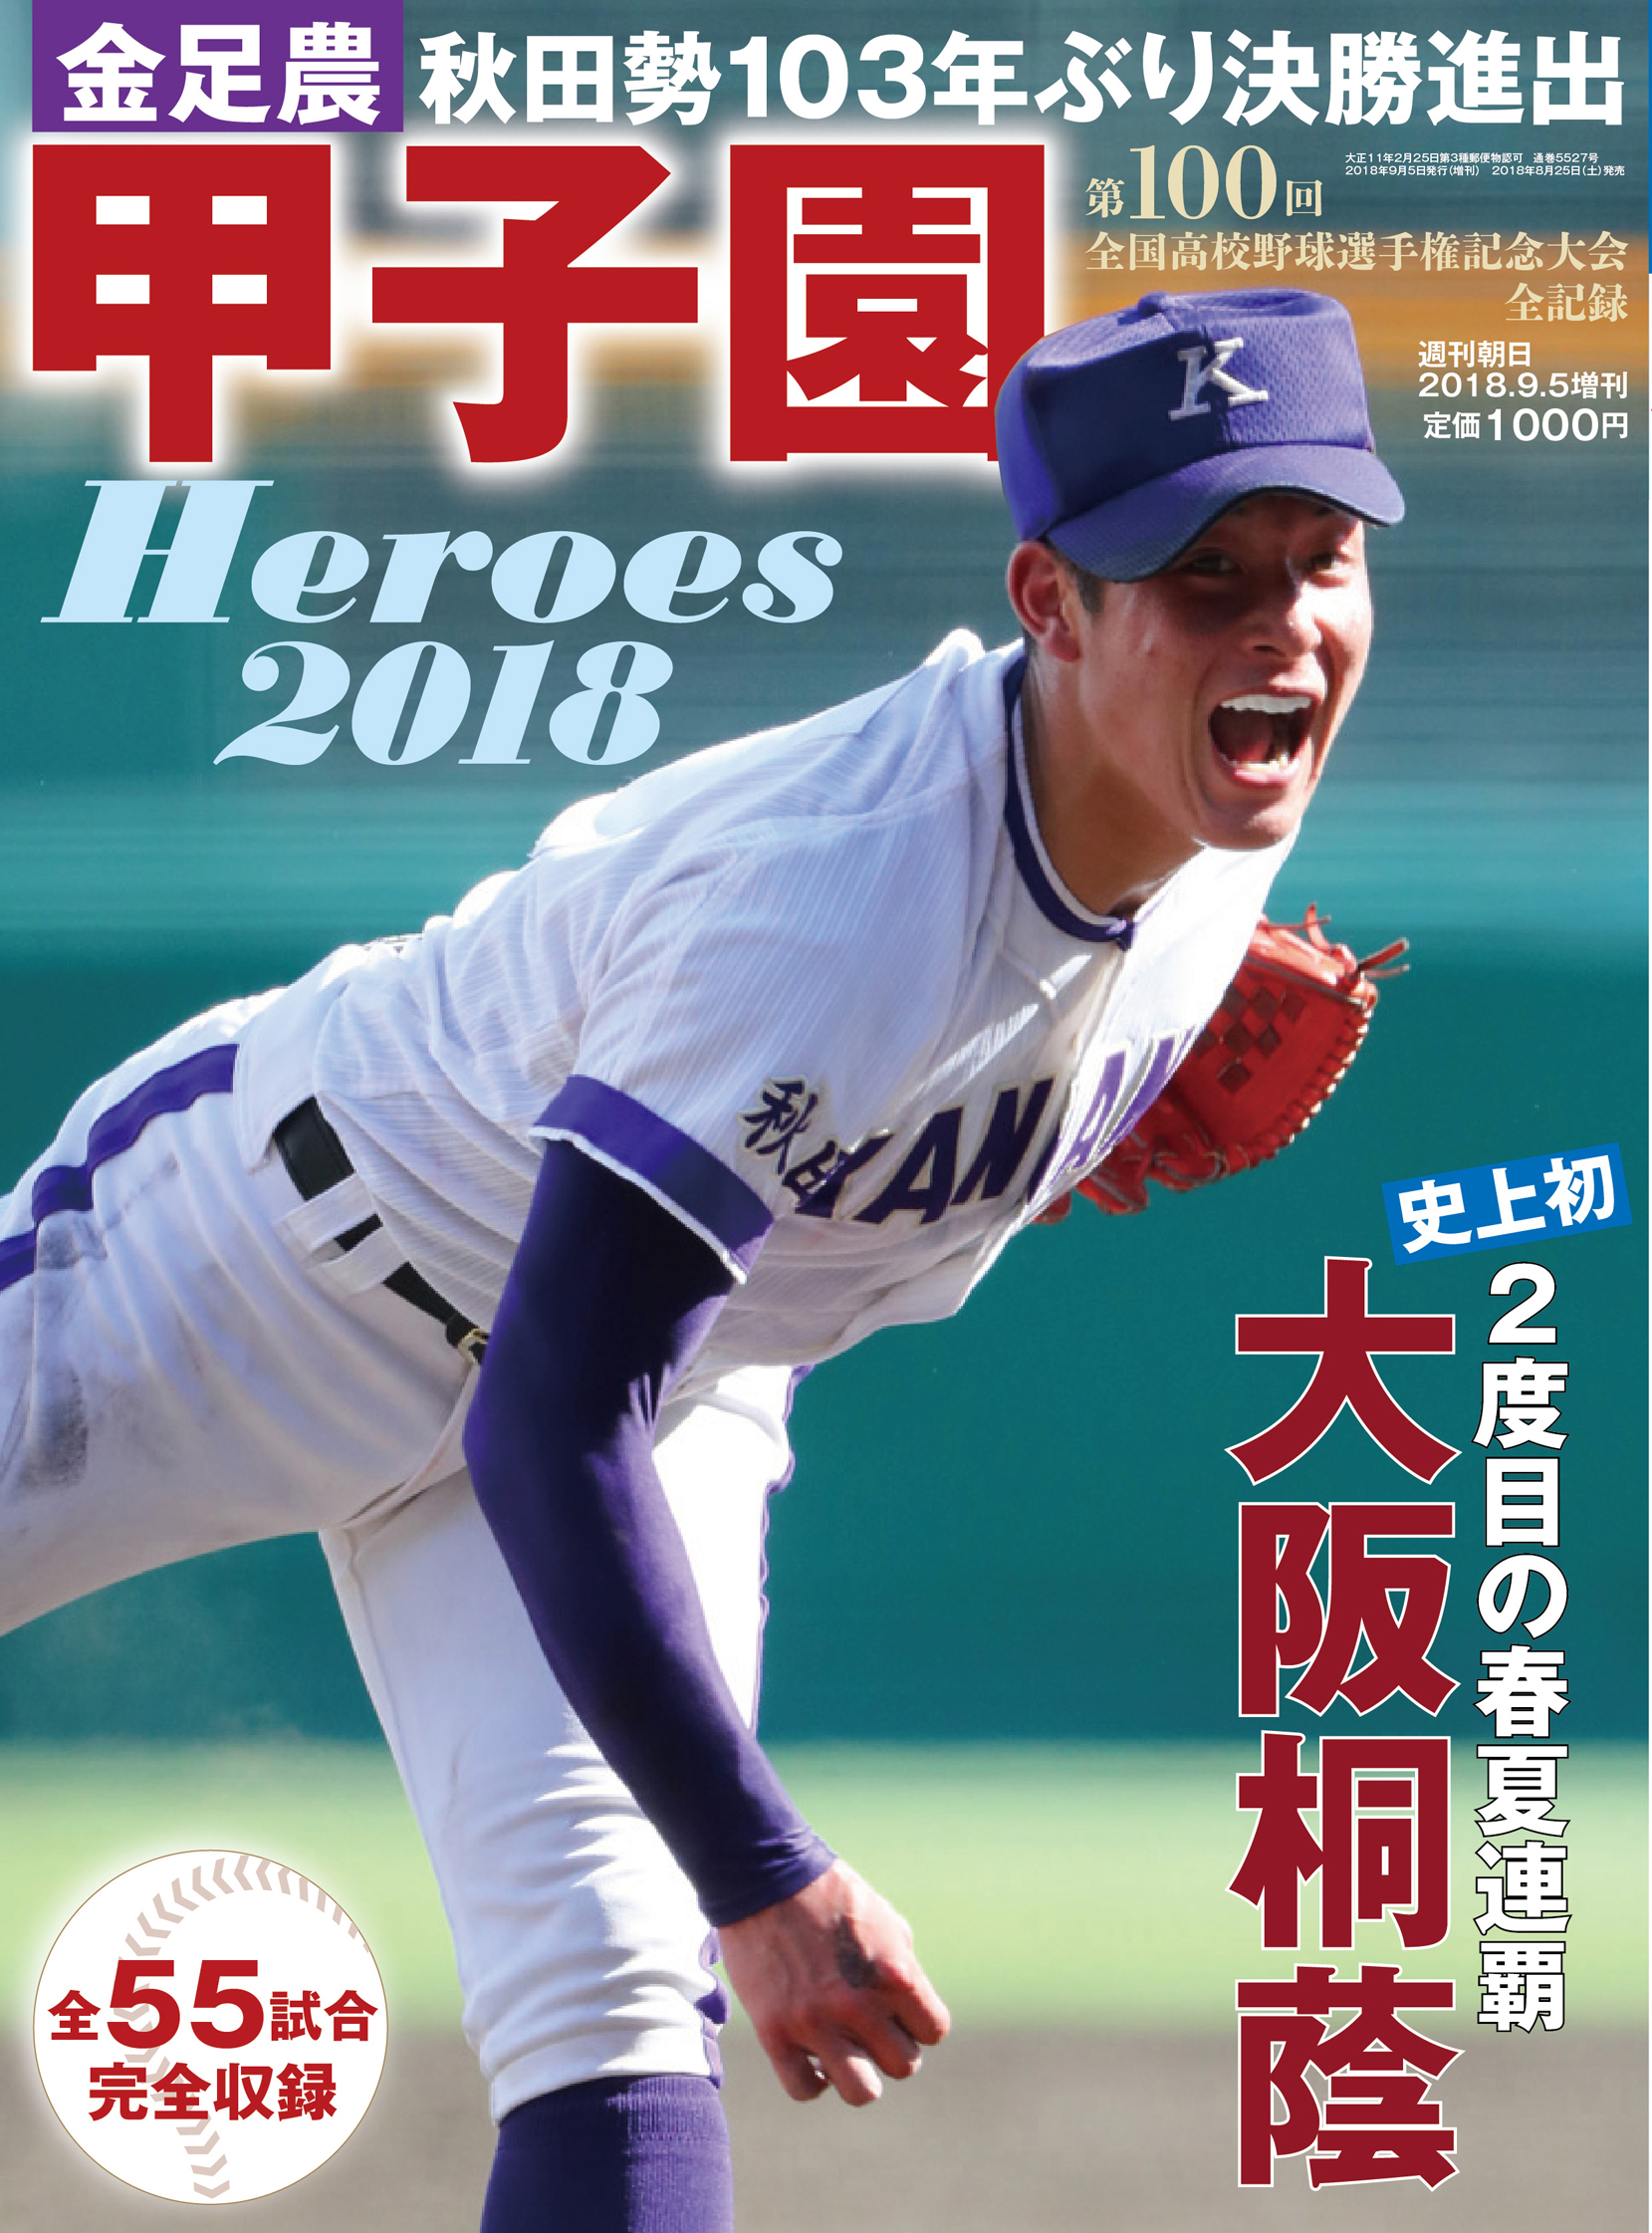 吉田輝星 金足農 が表紙に ５年ぶりの復刊 甲子園heroes 18 株式会社朝日新聞出版のプレスリリース